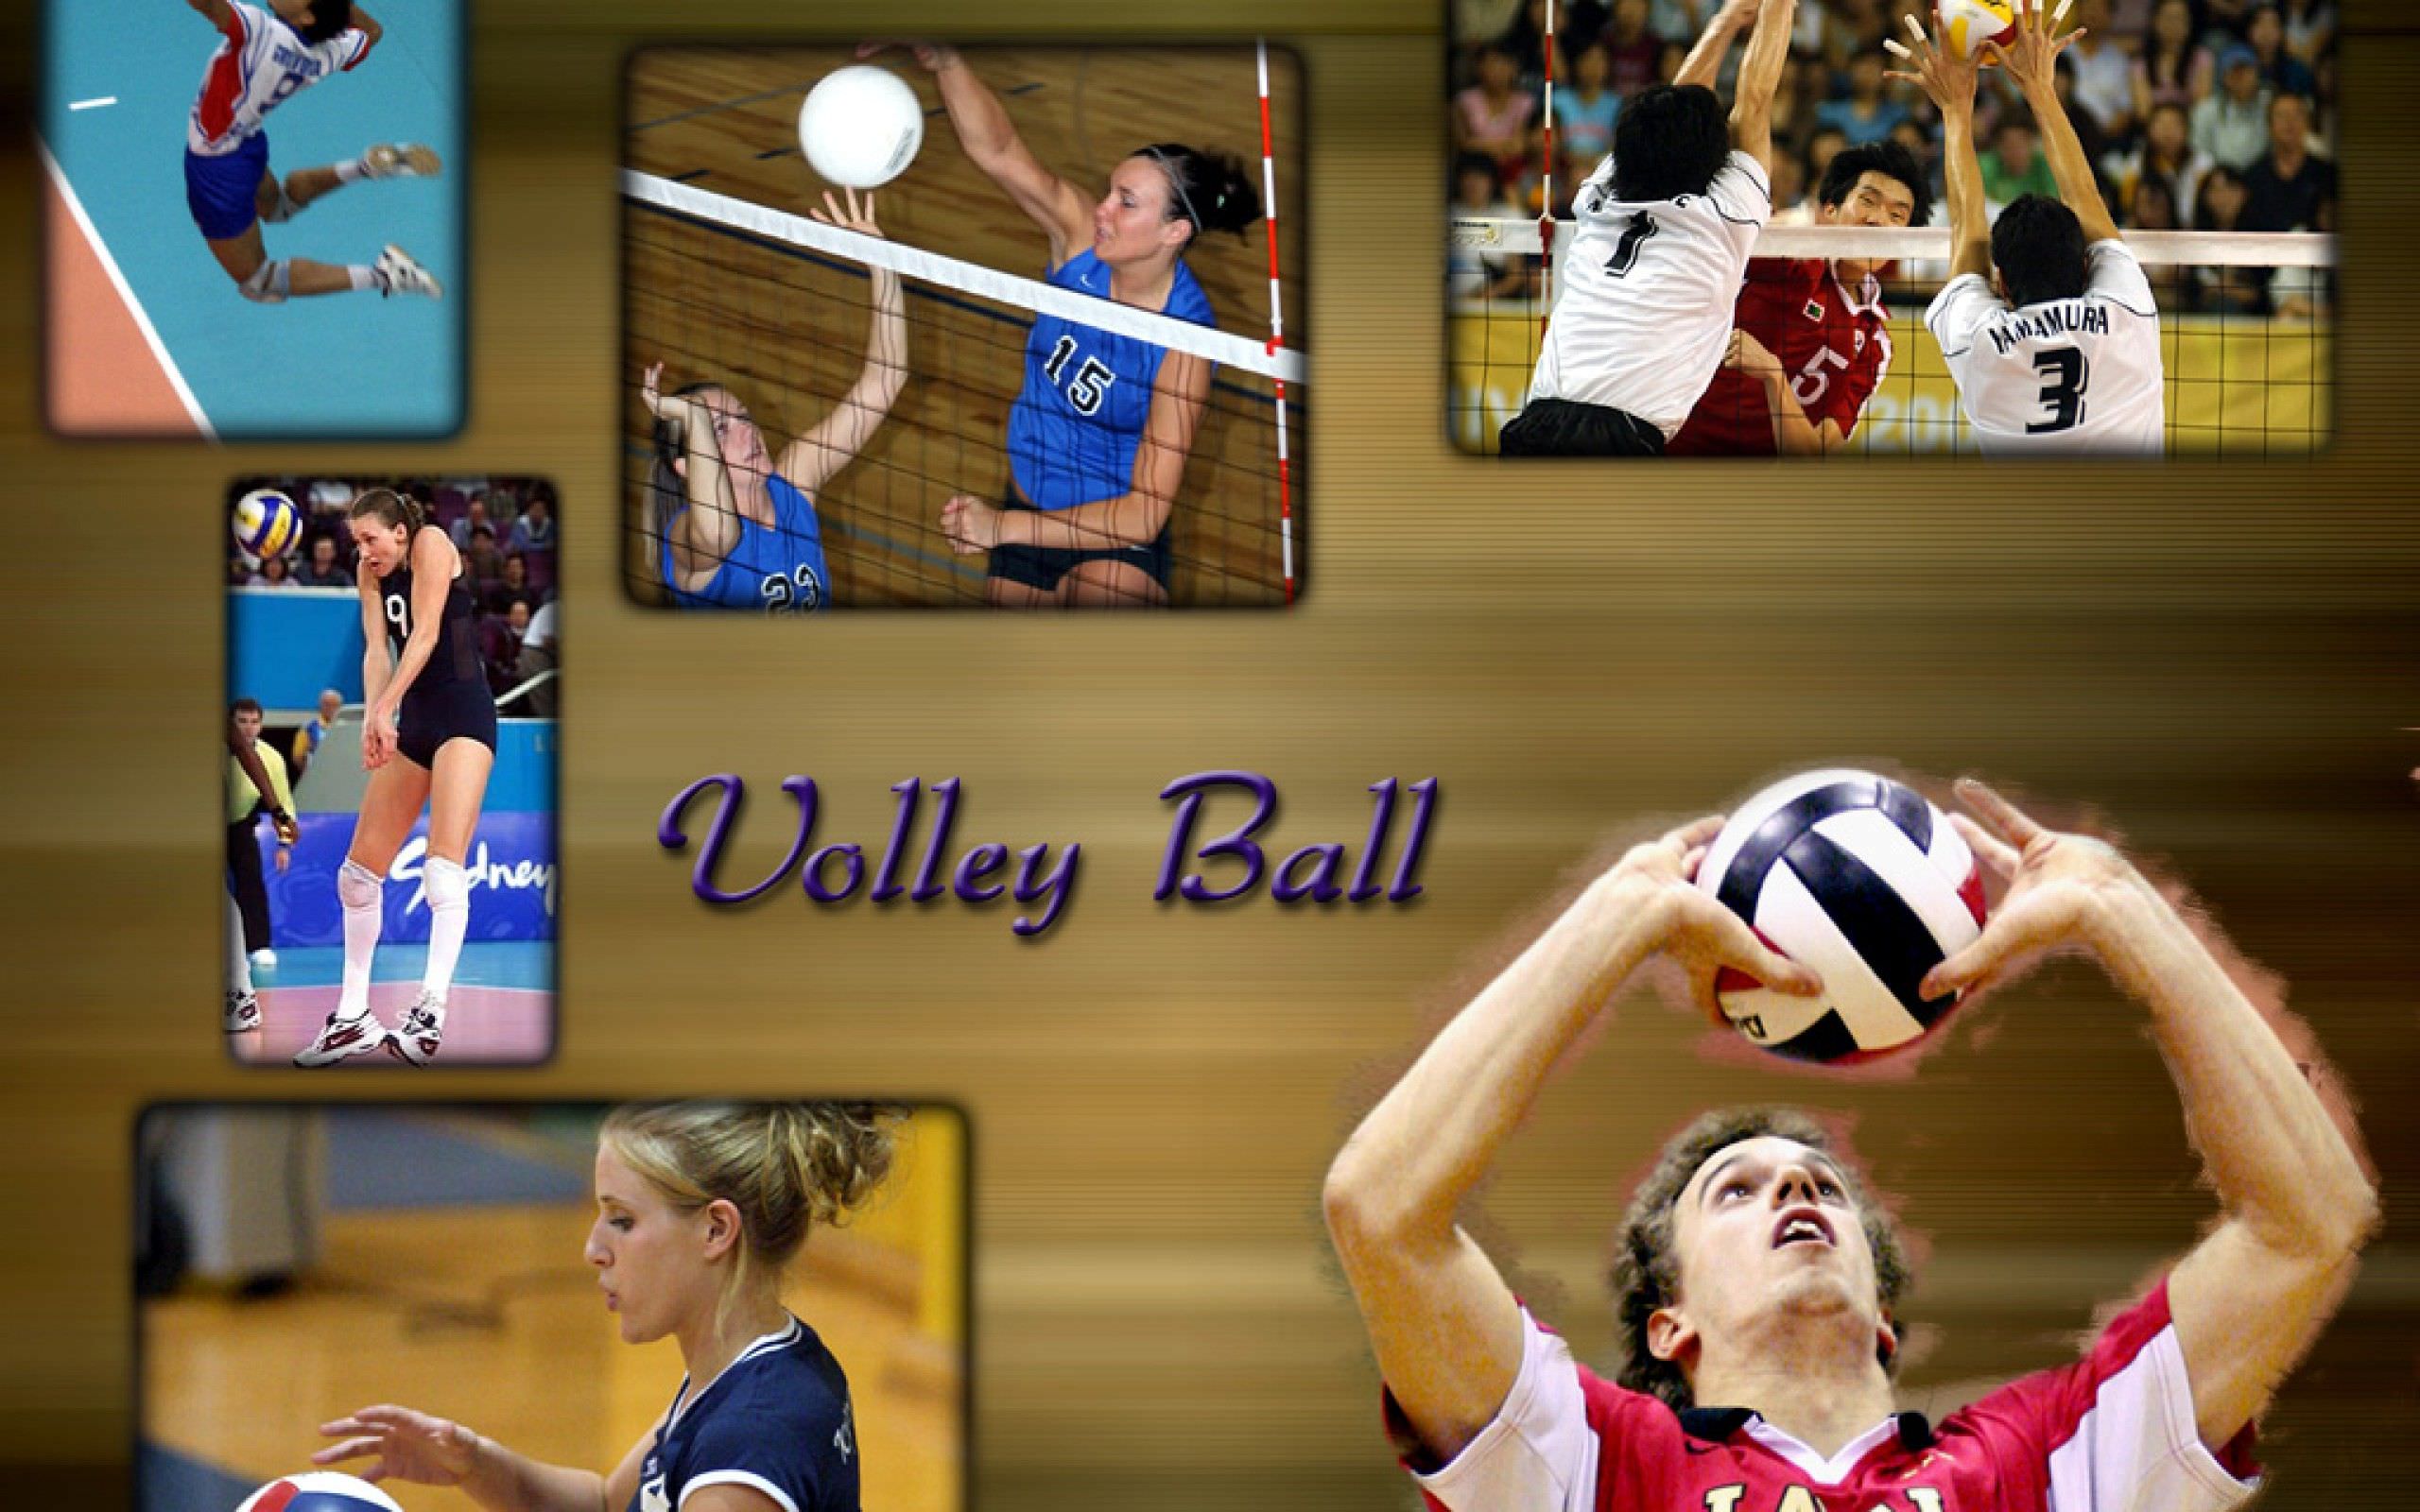 volleyball wallpaper hd,volleyball,volleyballspieler,sport,basketball spieler,volleyball